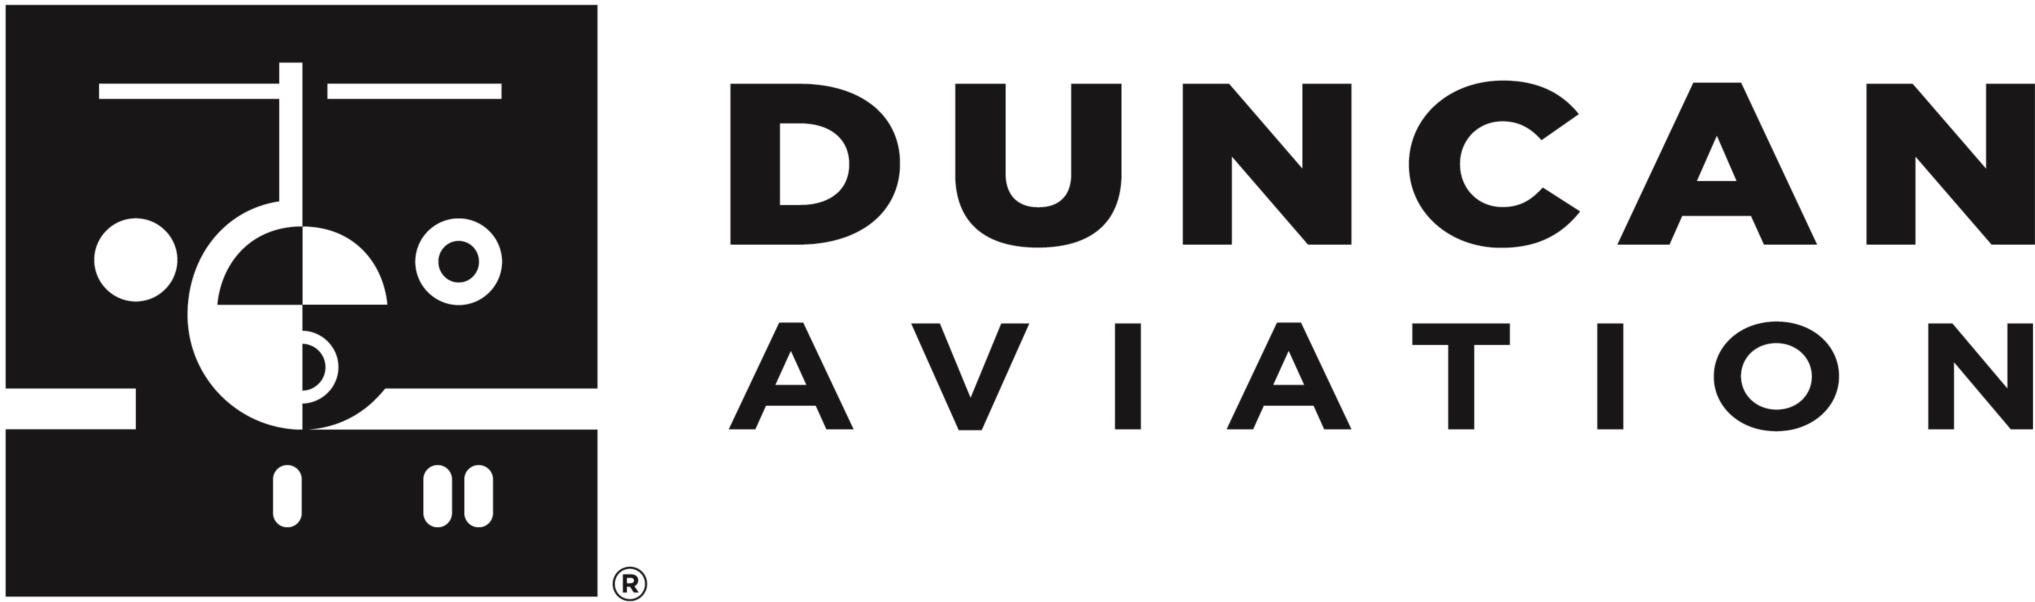 Duncan Aviation Company Logo